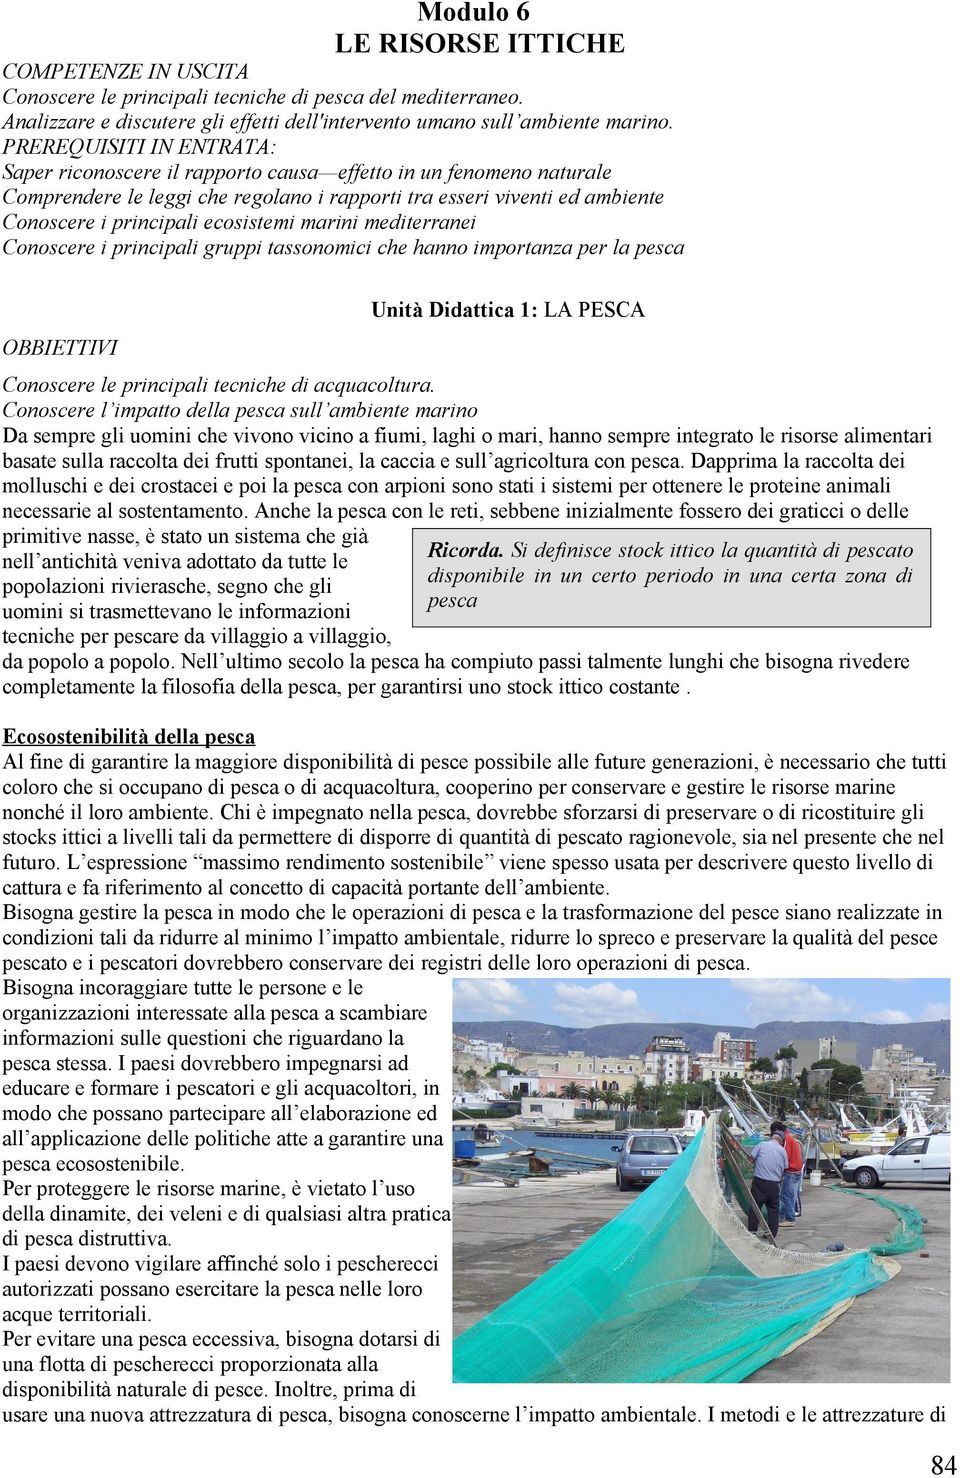 ecosistemi marini mediterranei Conoscere i principali gruppi tassonomici che hanno importanza per la pesca OBBIETTIVI Unità Didattica 1: LA PESCA Conoscere le principali tecniche di acquacoltura.